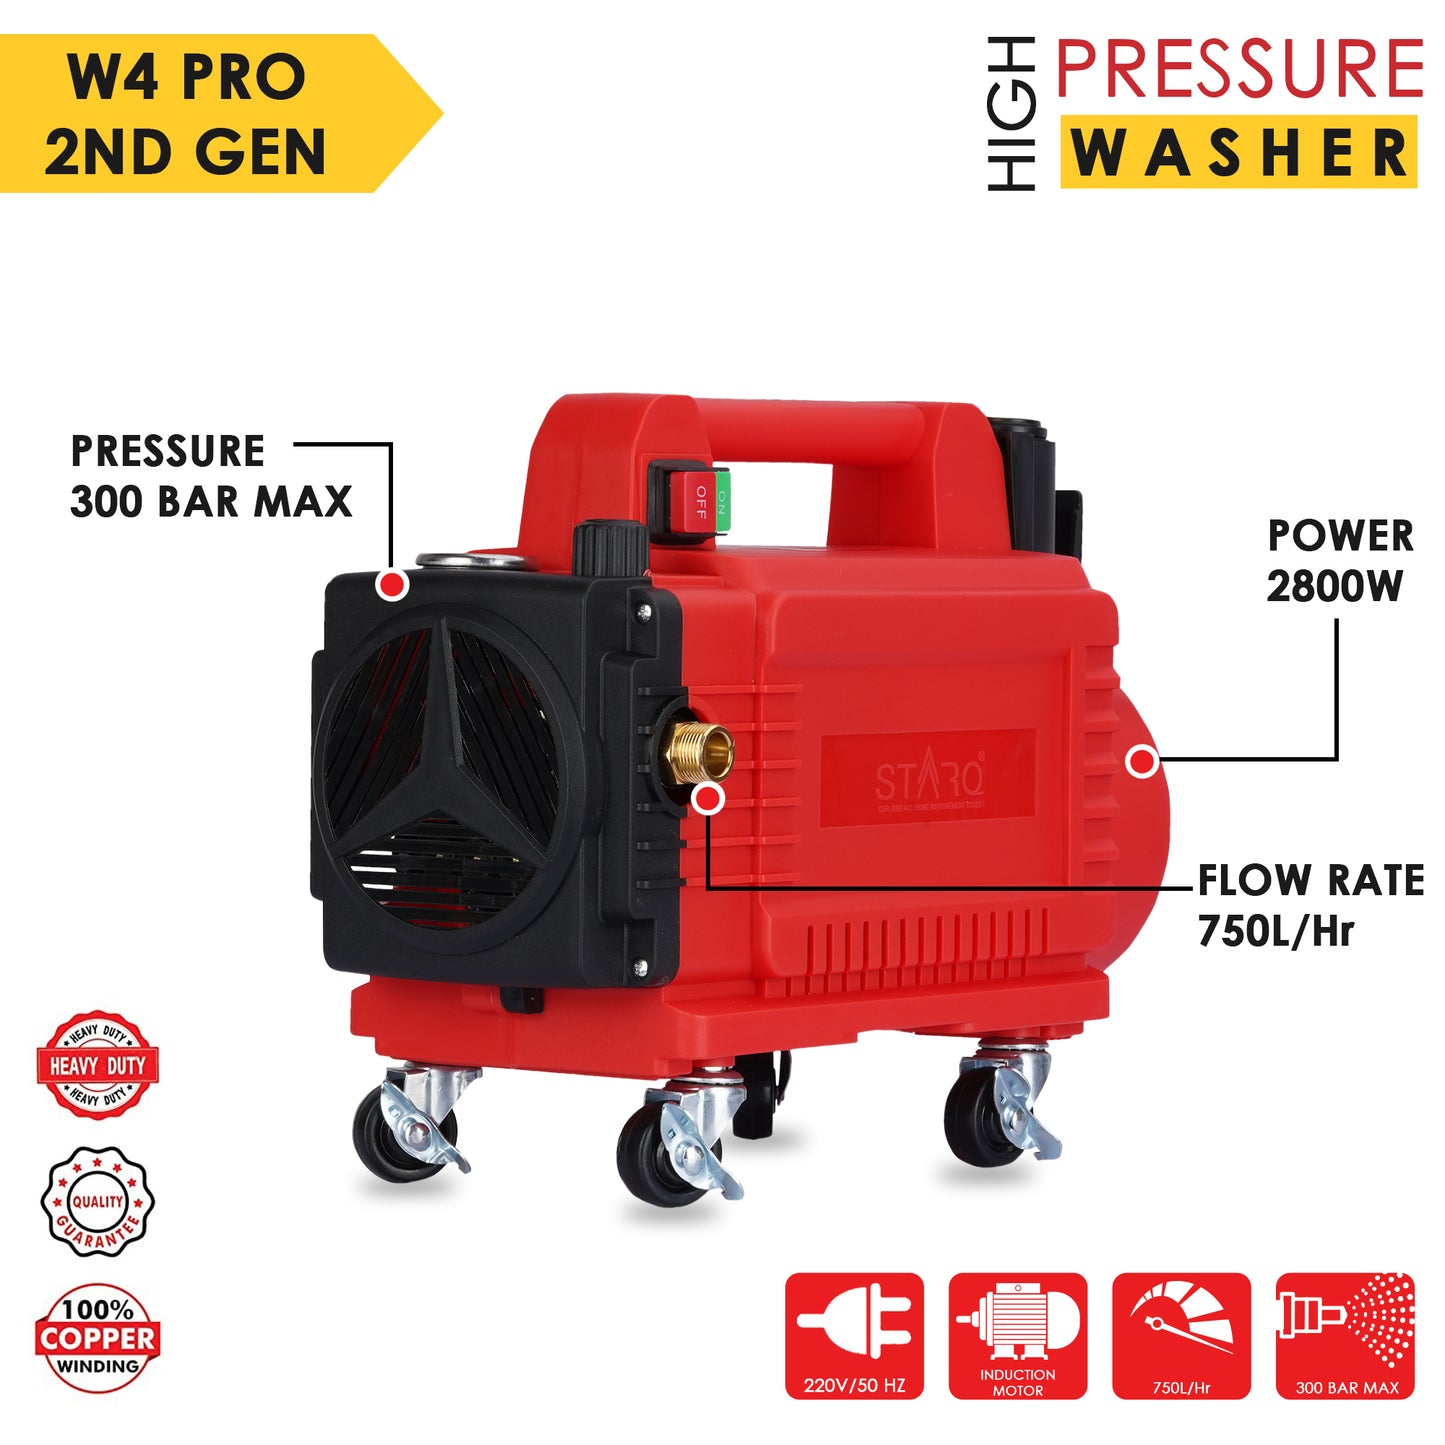 STARQ STW4 PRO 2nd GENERATION 2800 W Heavy Duty (0-300 Bar) Max 300 Bar car Pressure Washer with Pressure Control Knob and Wheels 1 Year Warranty [RENEWED]